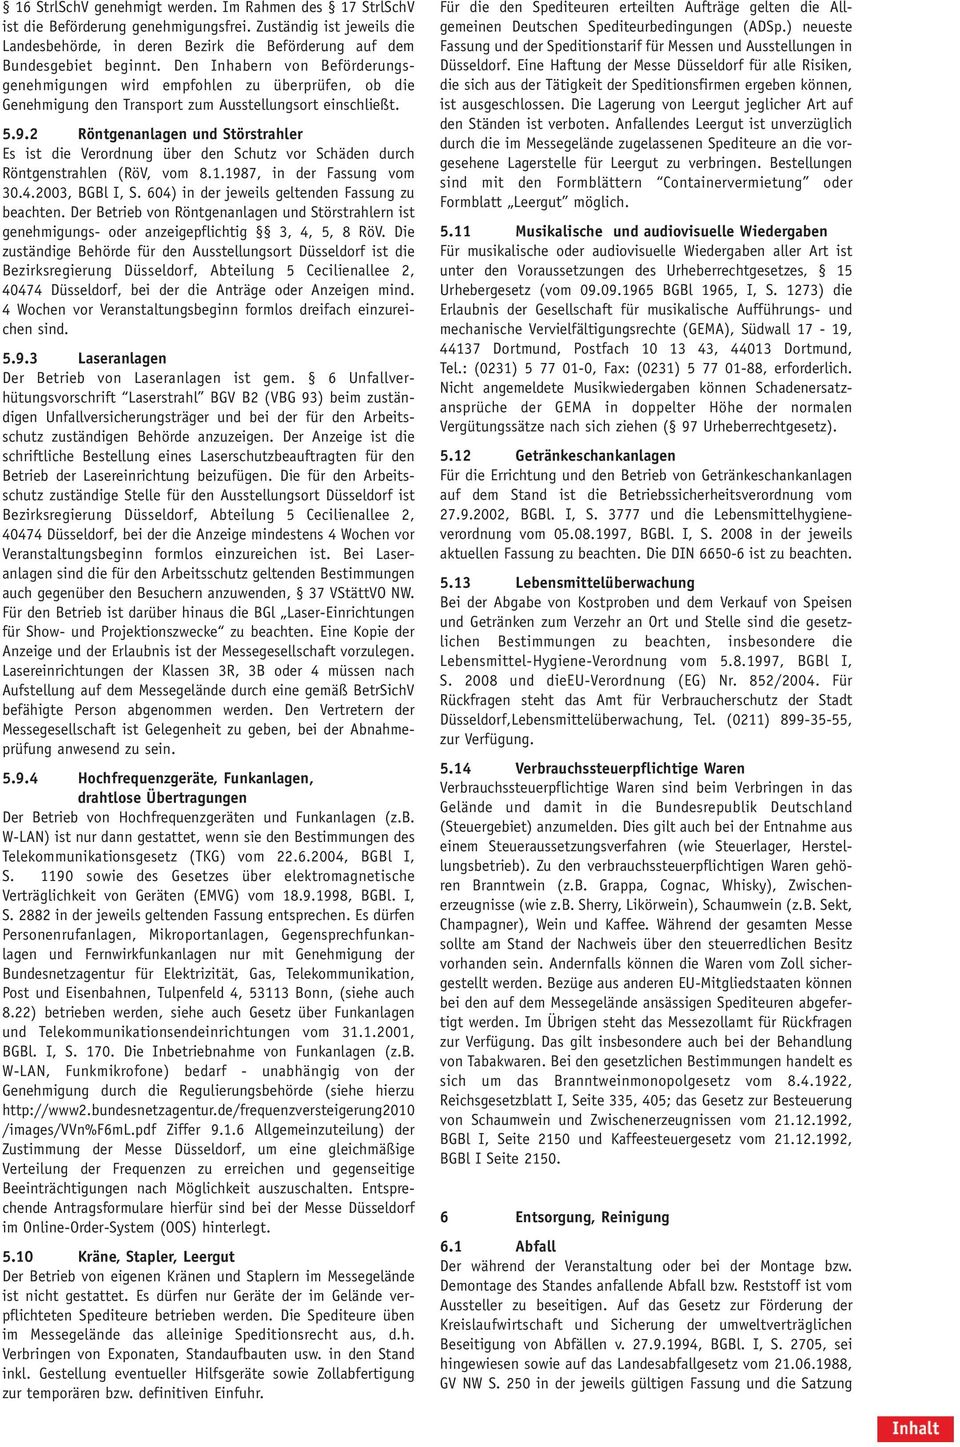 2 Röntgenanlagen und Störstrahler Es ist die Verordnung über den Schutz vor Schäden durch Röntgenstrahlen (RöV, vom 8.1.1987, in der Fassung vom 30.4.2003, BGBl I, S.